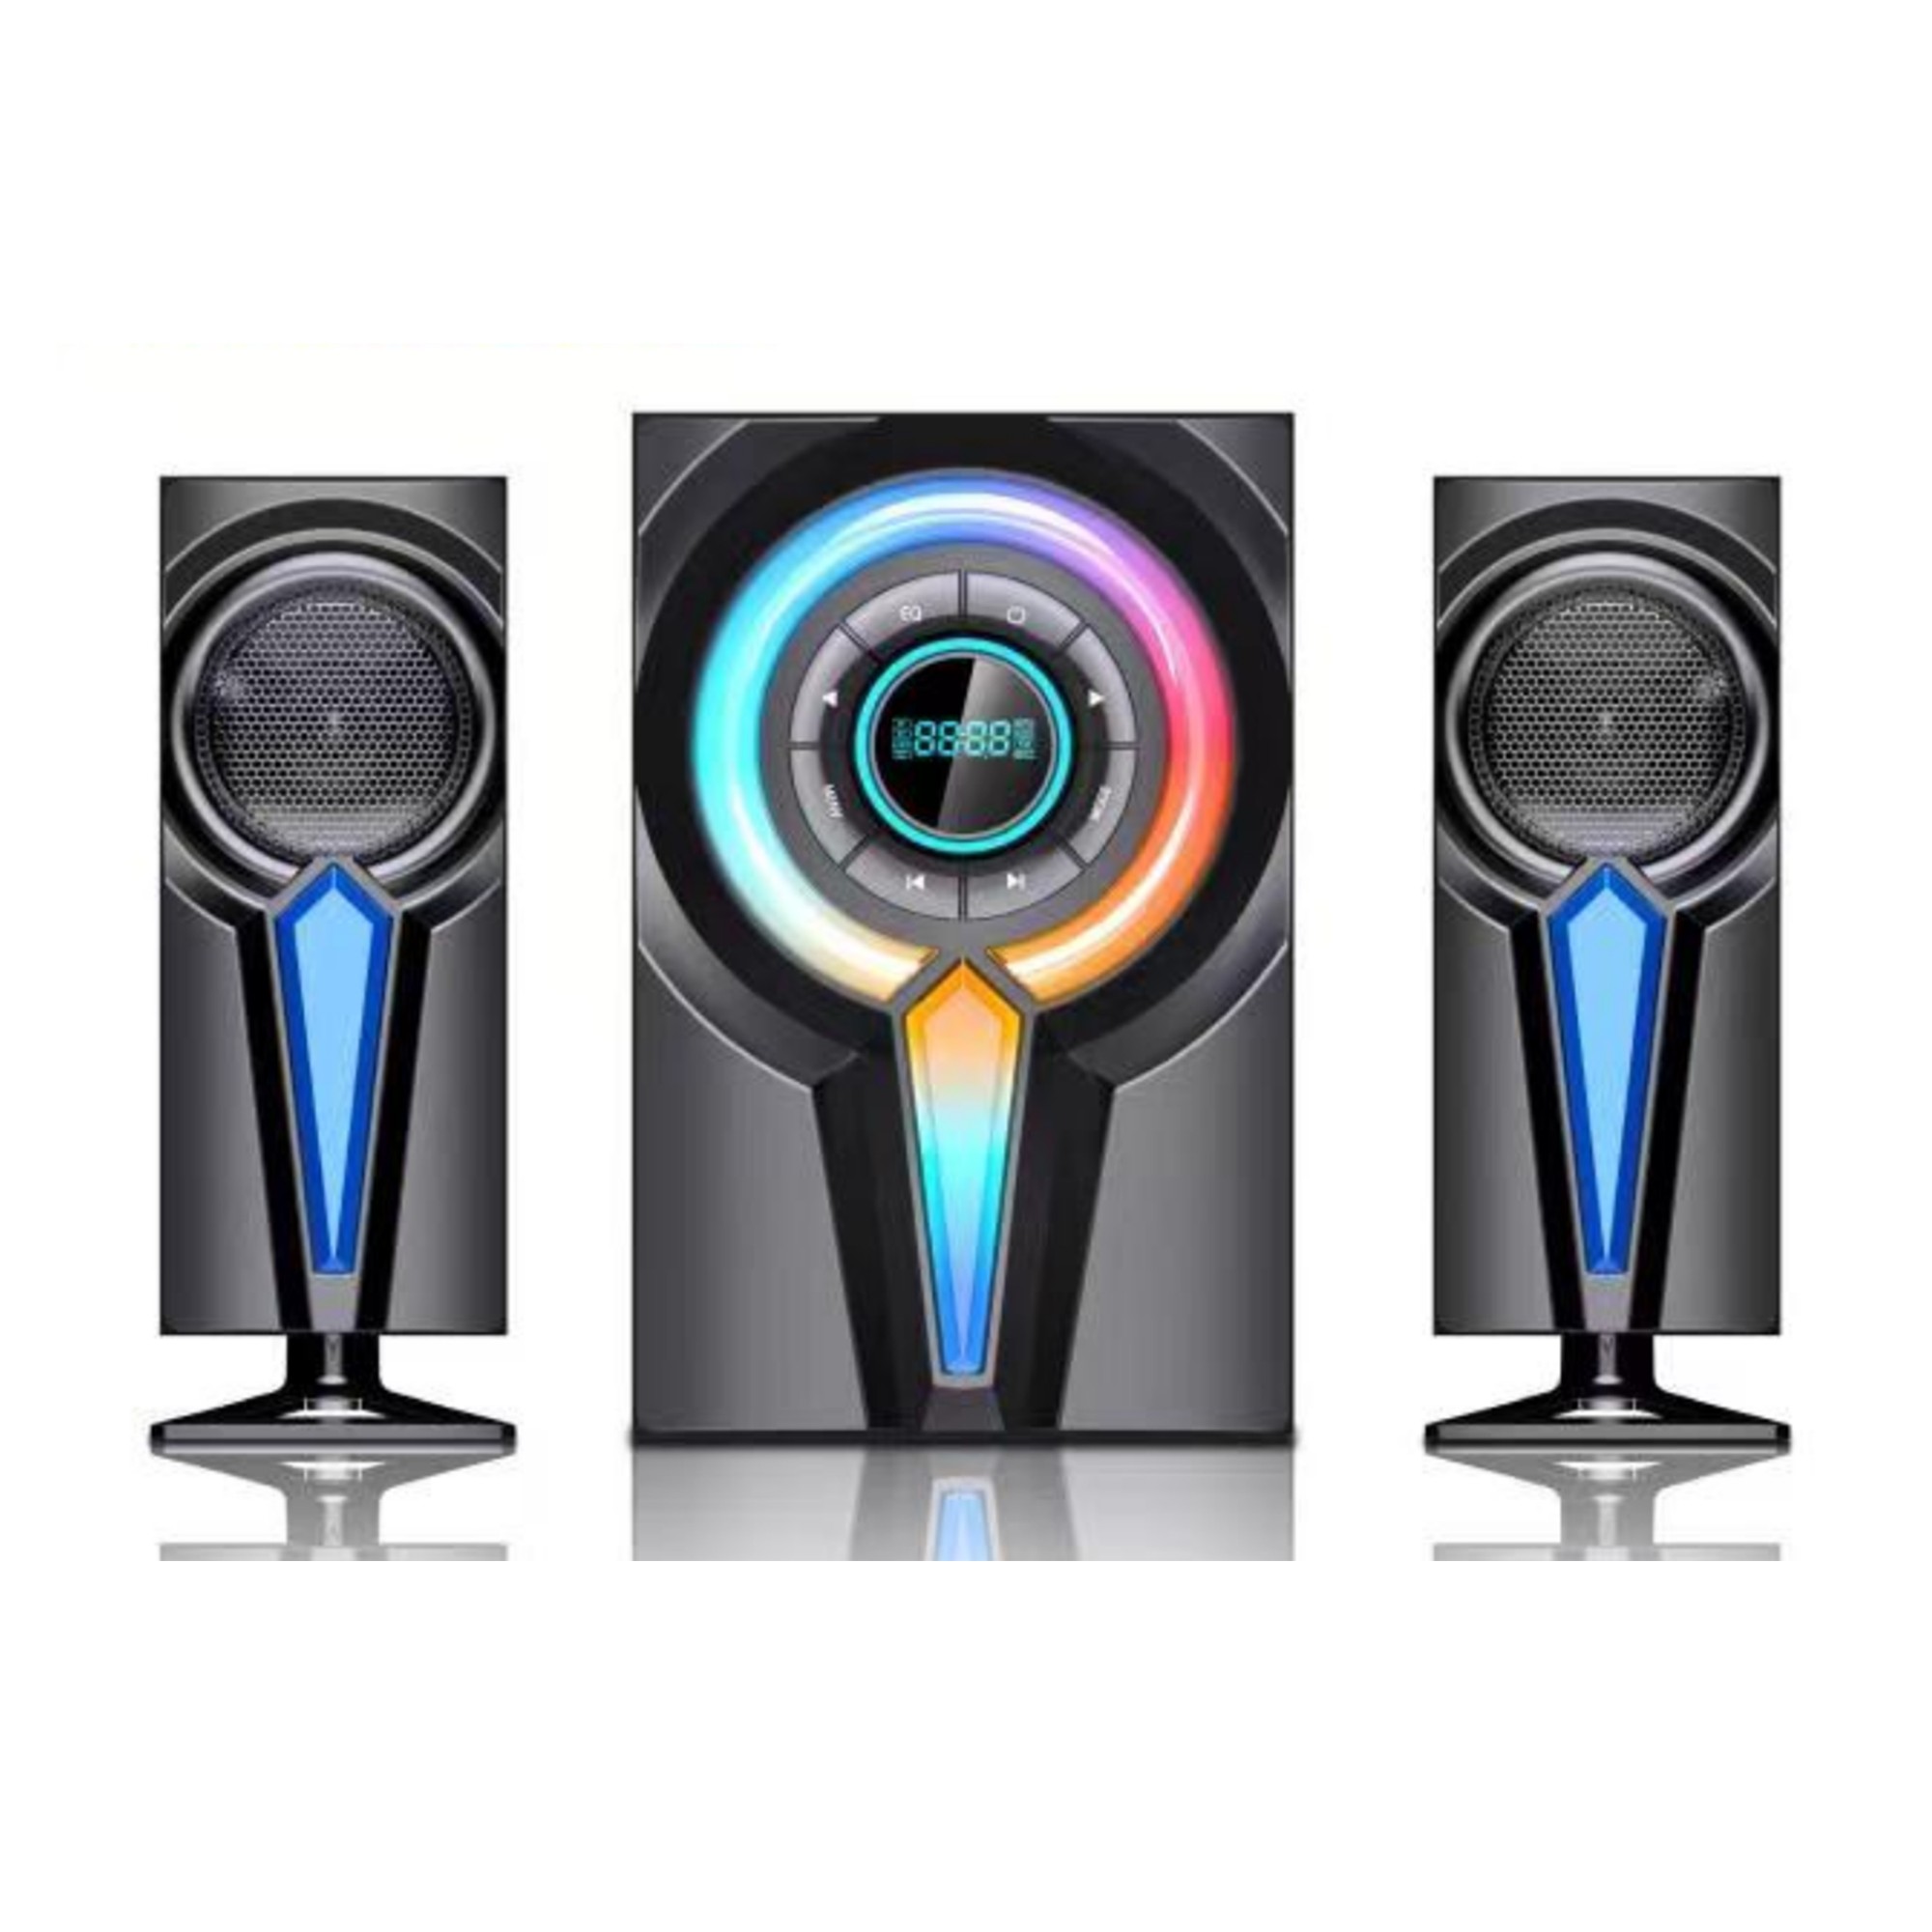 Multimedia speaker LK-D83